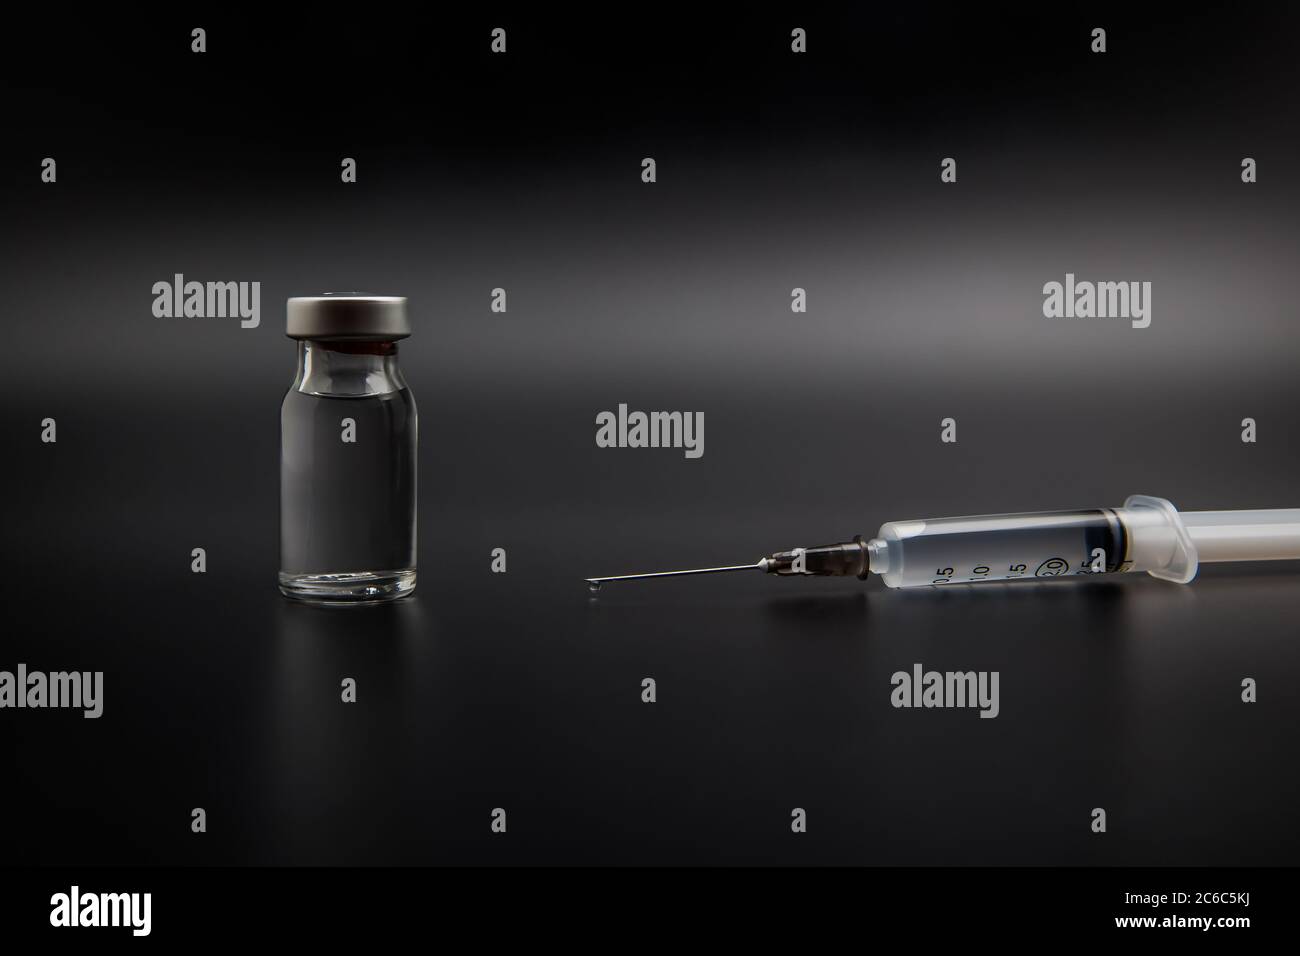 Flacone di vaccino piccolo (flaconcino) e siringa medica con una goccia di vaccino sull'ago, isolato su fondo nero per la vaccinazione di preventio Foto Stock